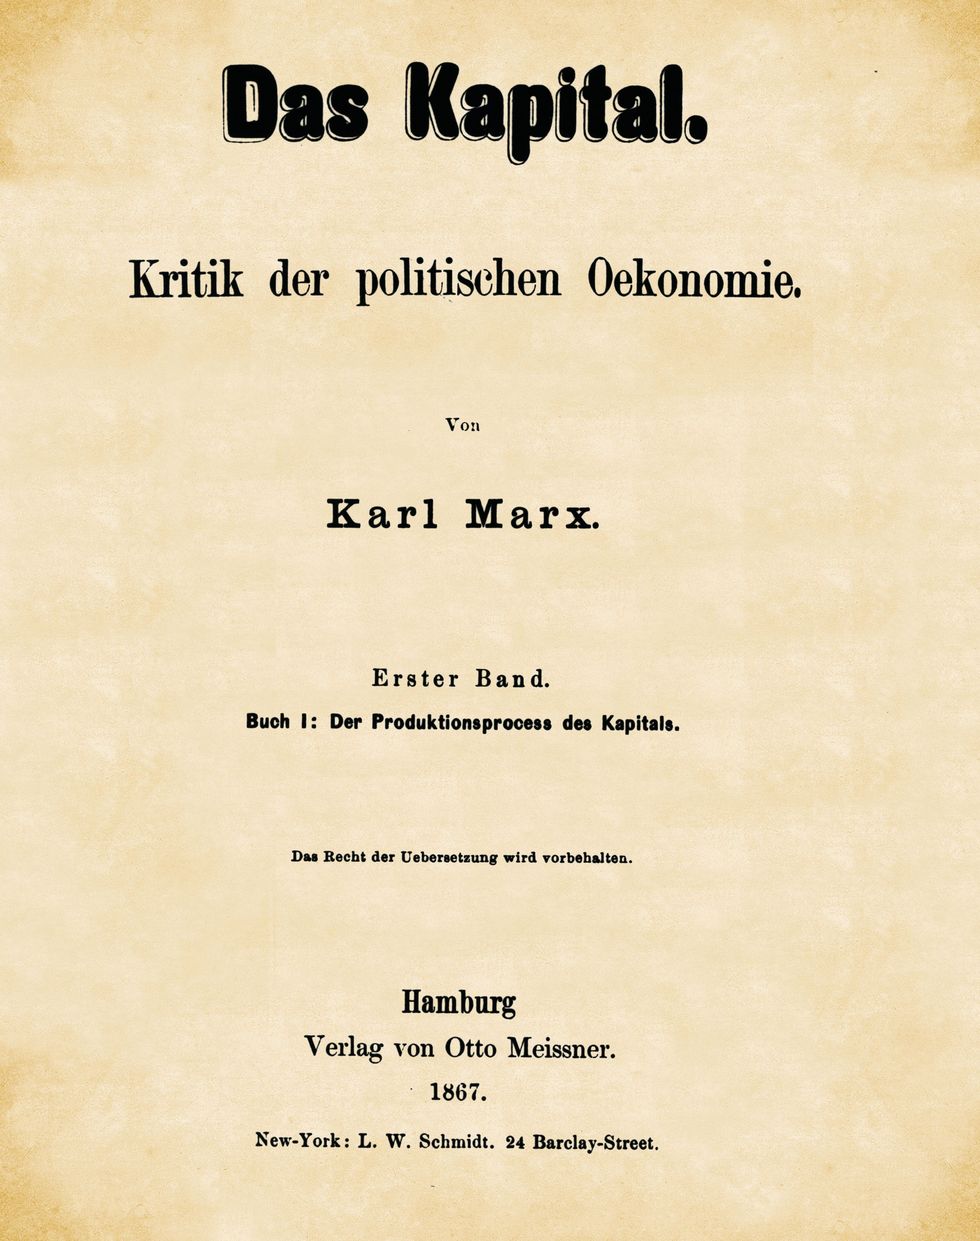 Het belangrijkste werk van Karl Marx Das Kapital eerste deel gepubliceerd in 1867